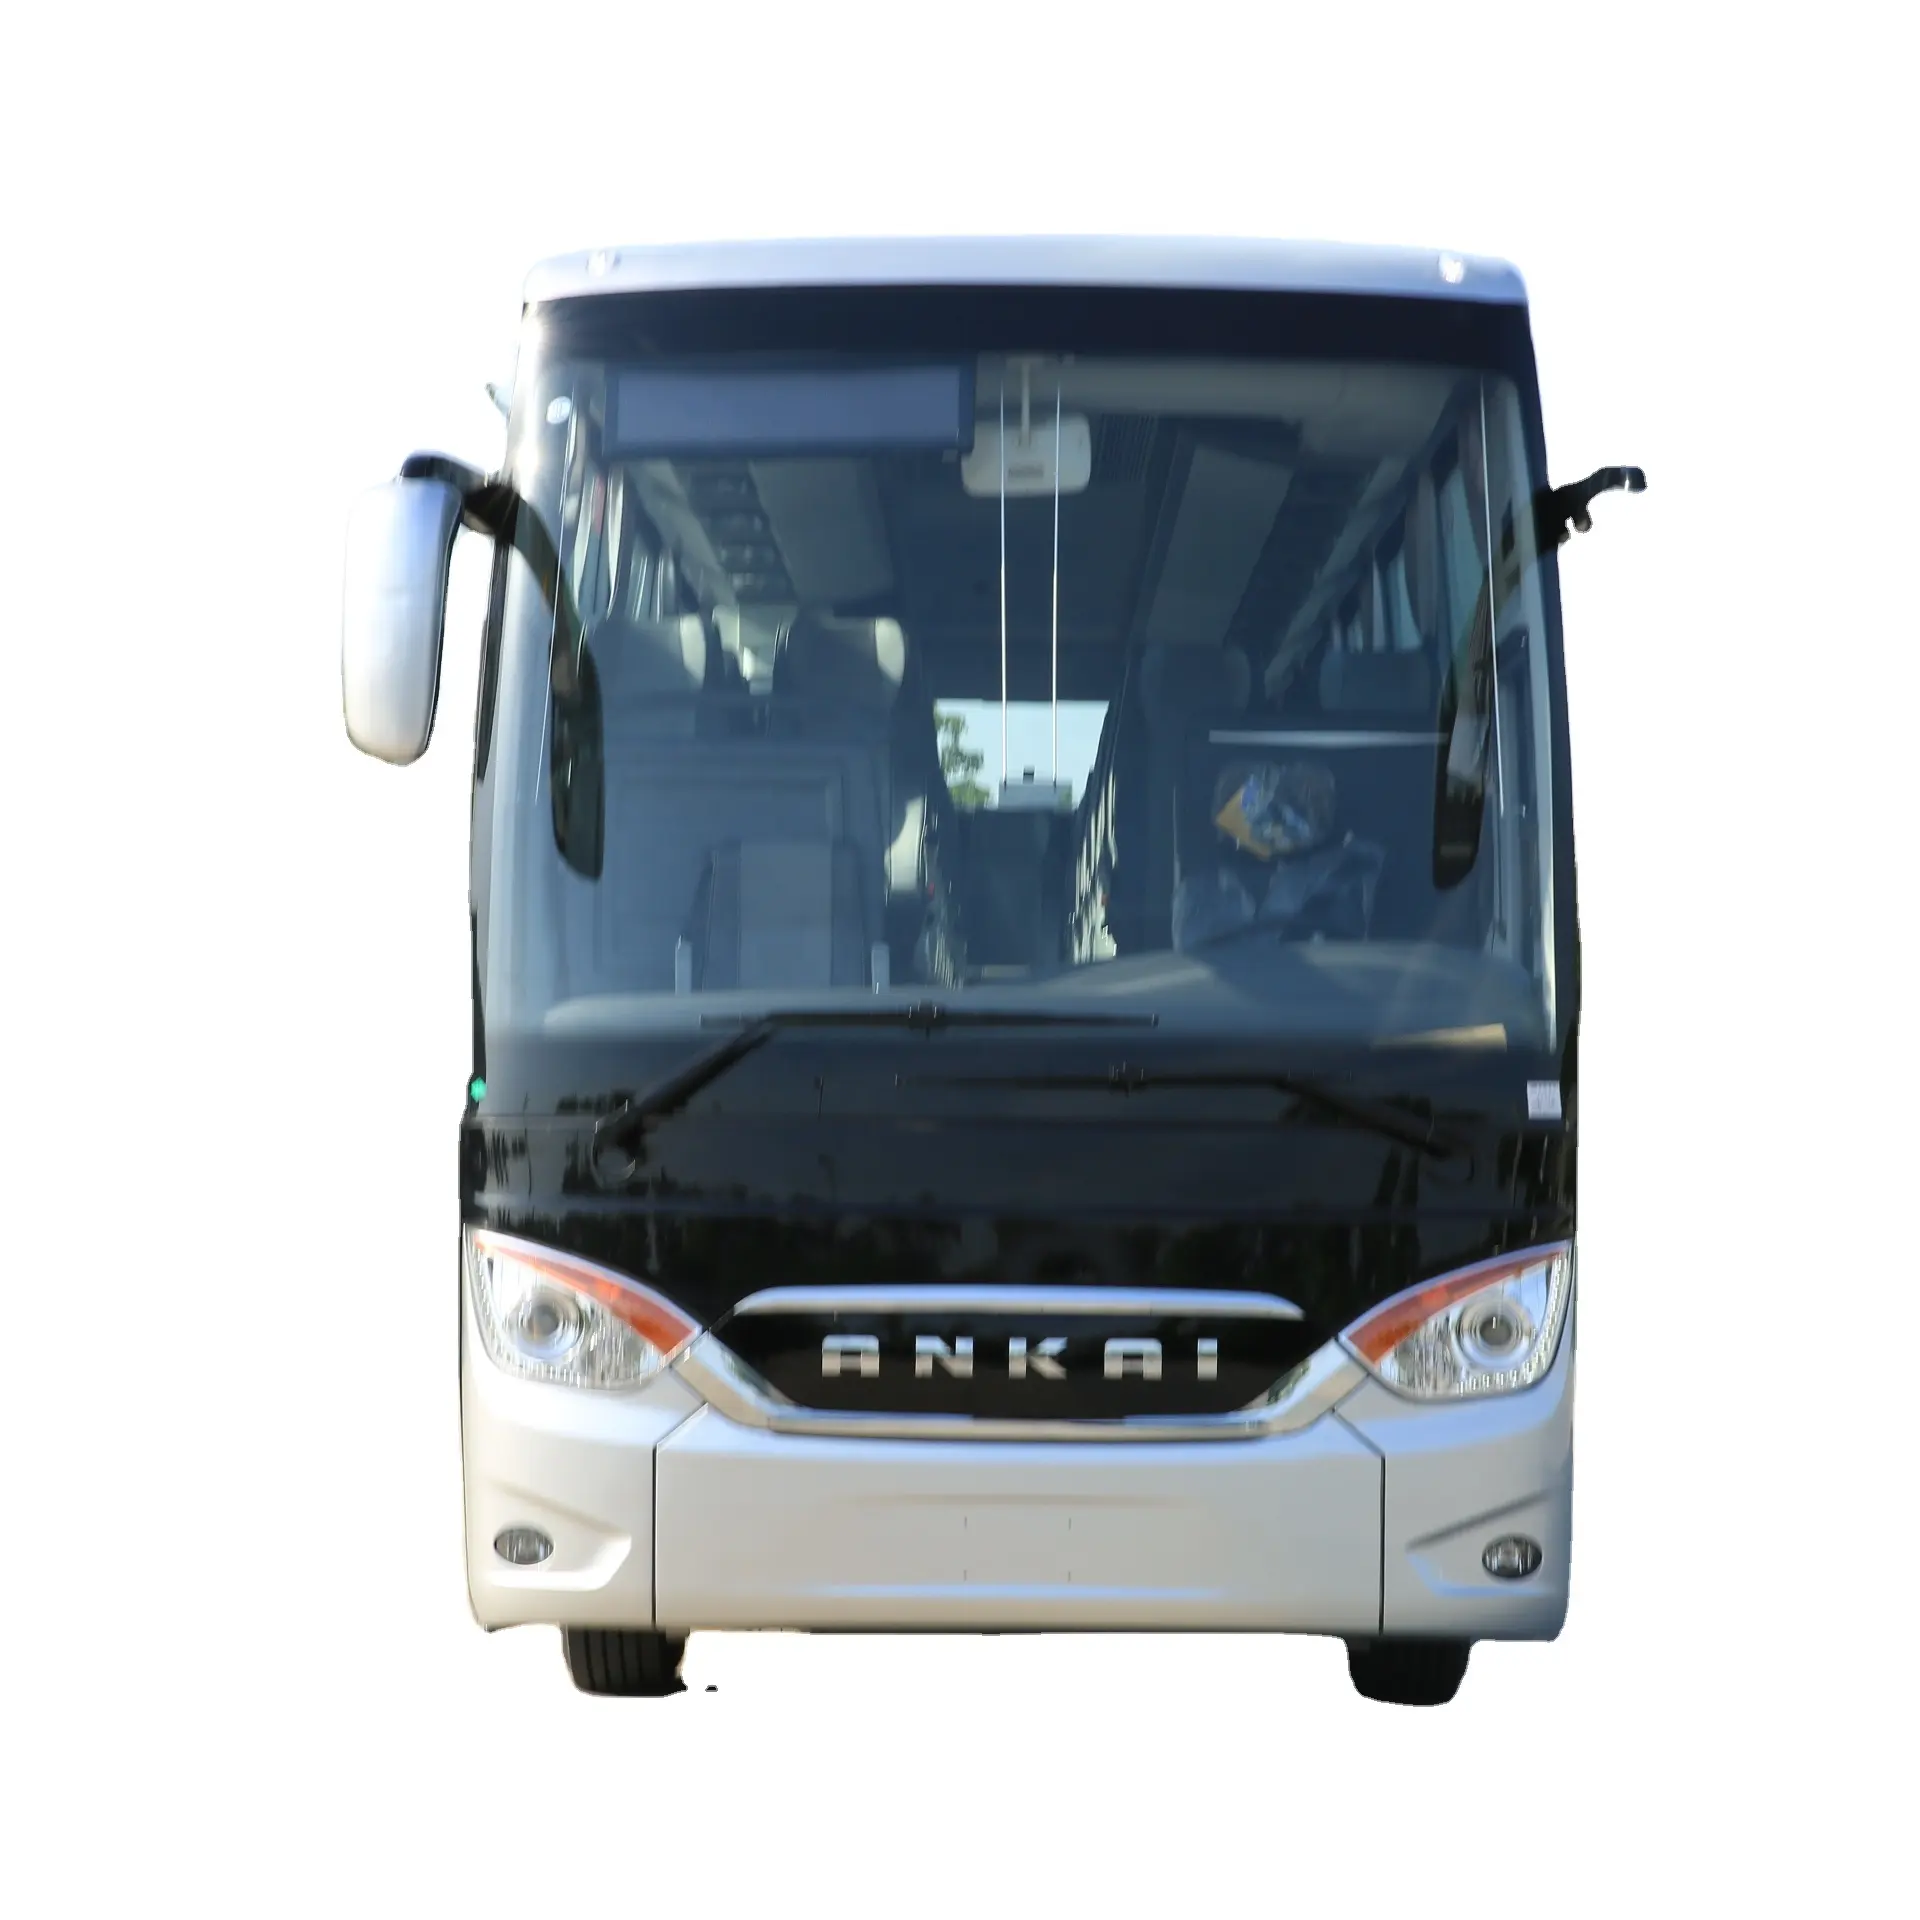 Ankai koç şehir çin düşük fiyat 12m satılık otobüs 21 - 40 111 - 130 km/h dizel Euro 3 LHD